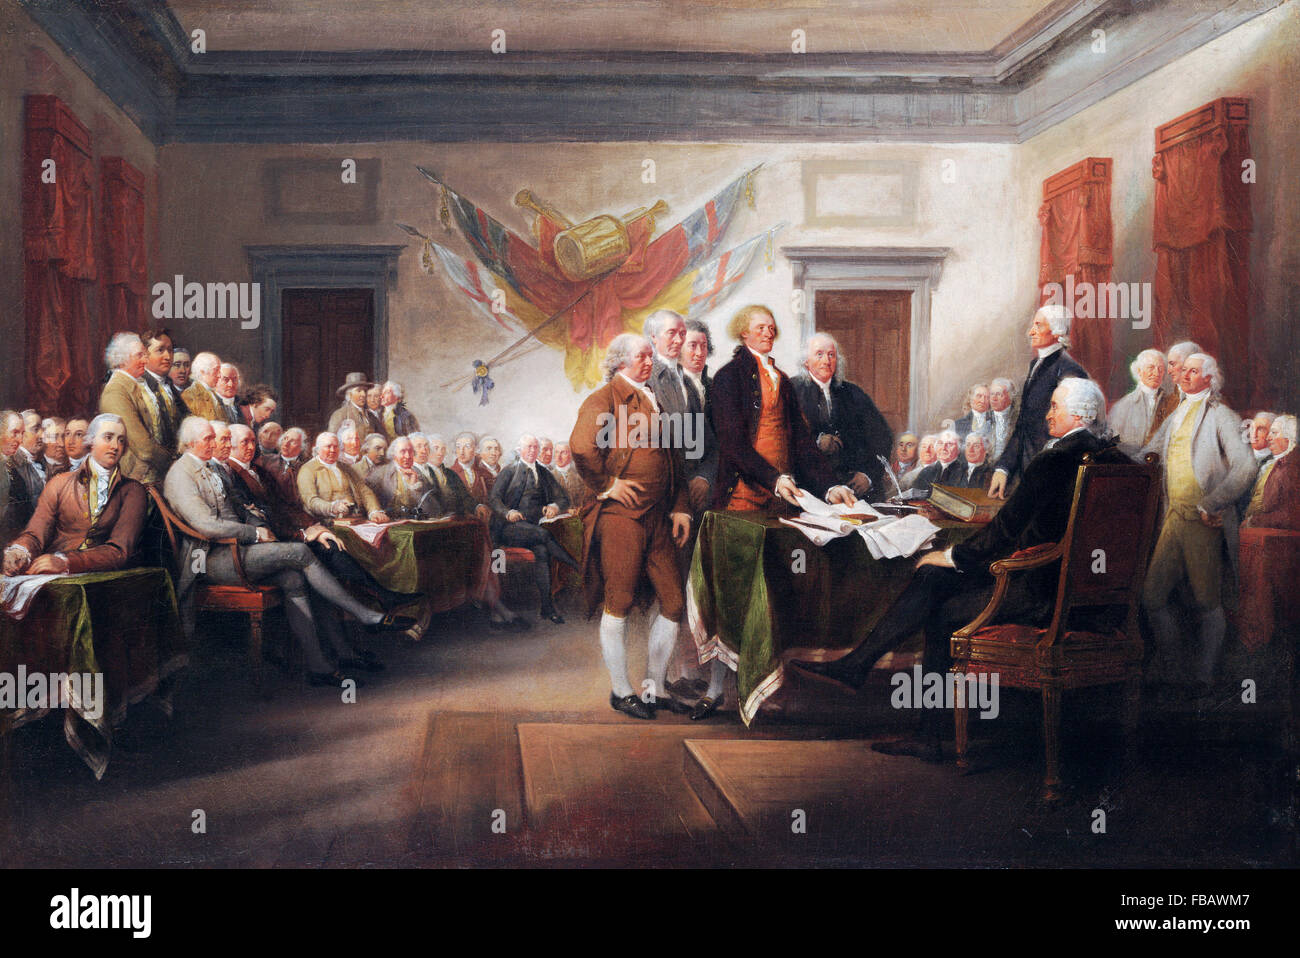 Dichiarazione di indipendenza. La firma della dichiarazione d'indipendenza degli Stati Uniti nel 1776 - un dipinto di John Trumbull Foto Stock